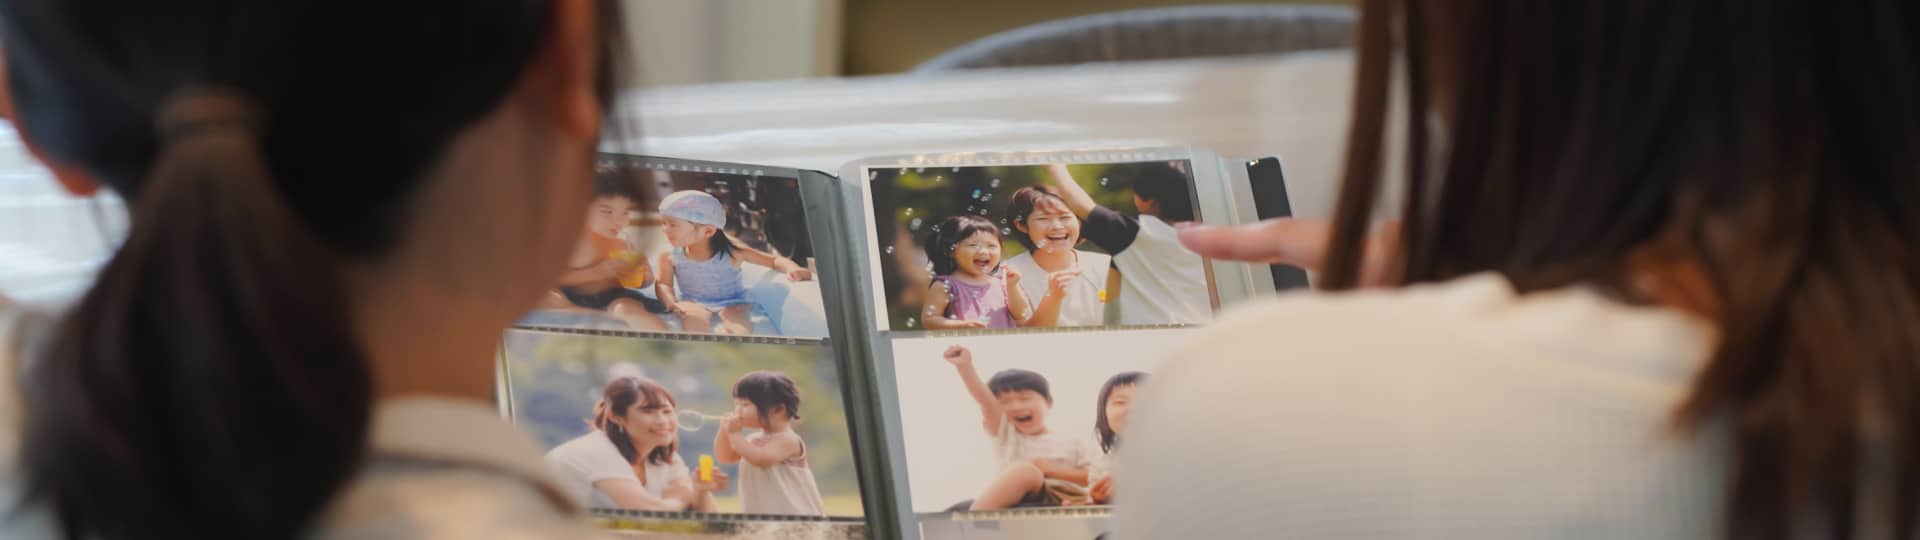 家族のアルバム写真を電子化 - 思い出を永遠に保存する方法